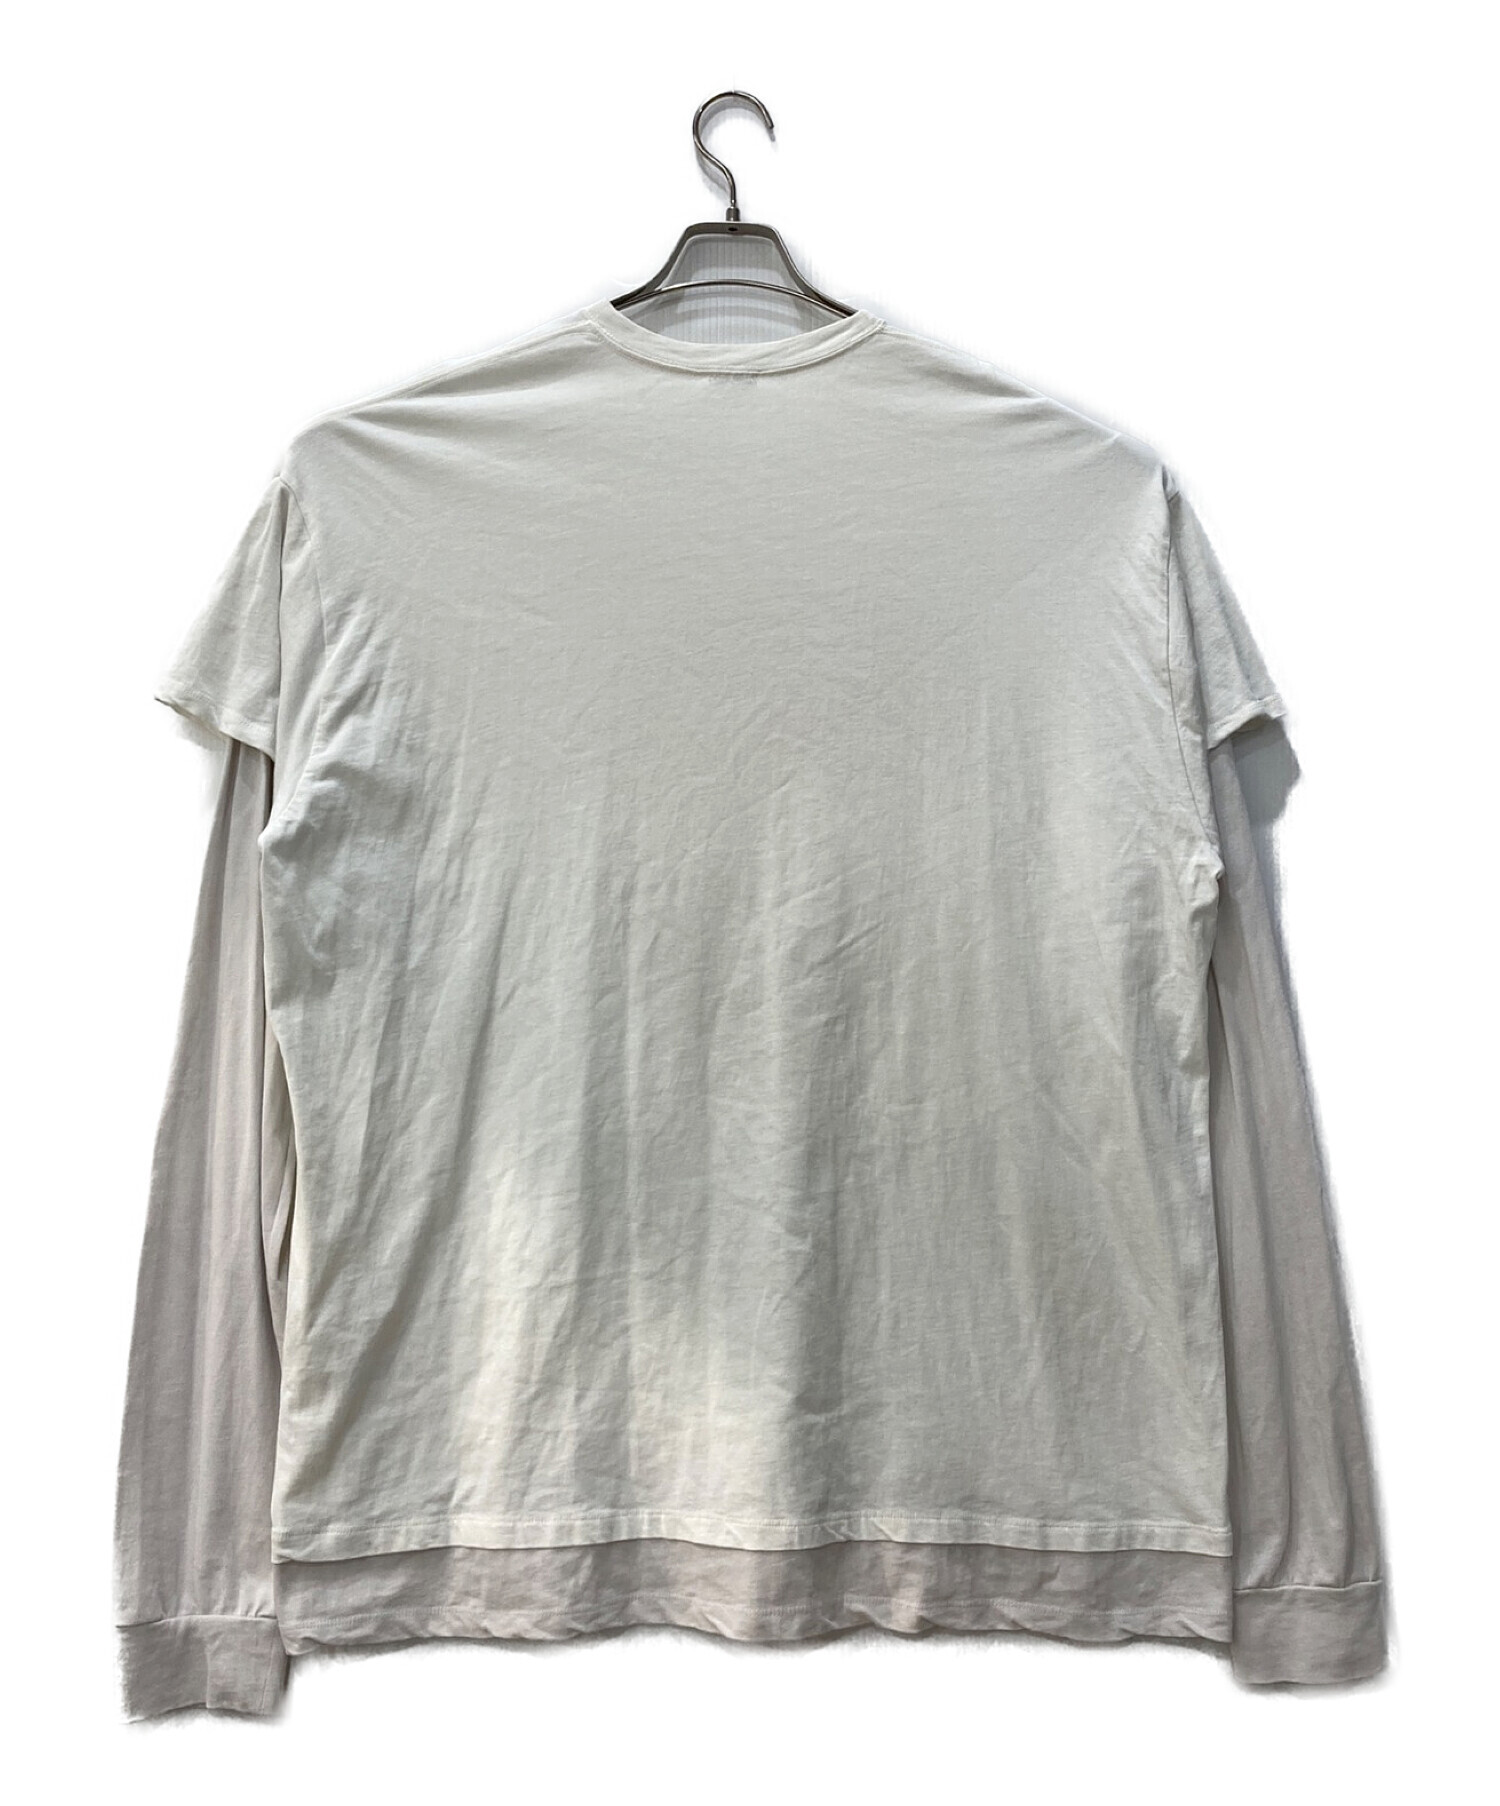 SEA (シー) Tシャツ コットンバイカラー4XLレイヤードグラフィックロングスリーブTEEシャツ 110721121 ホワイト サイズ:FREE